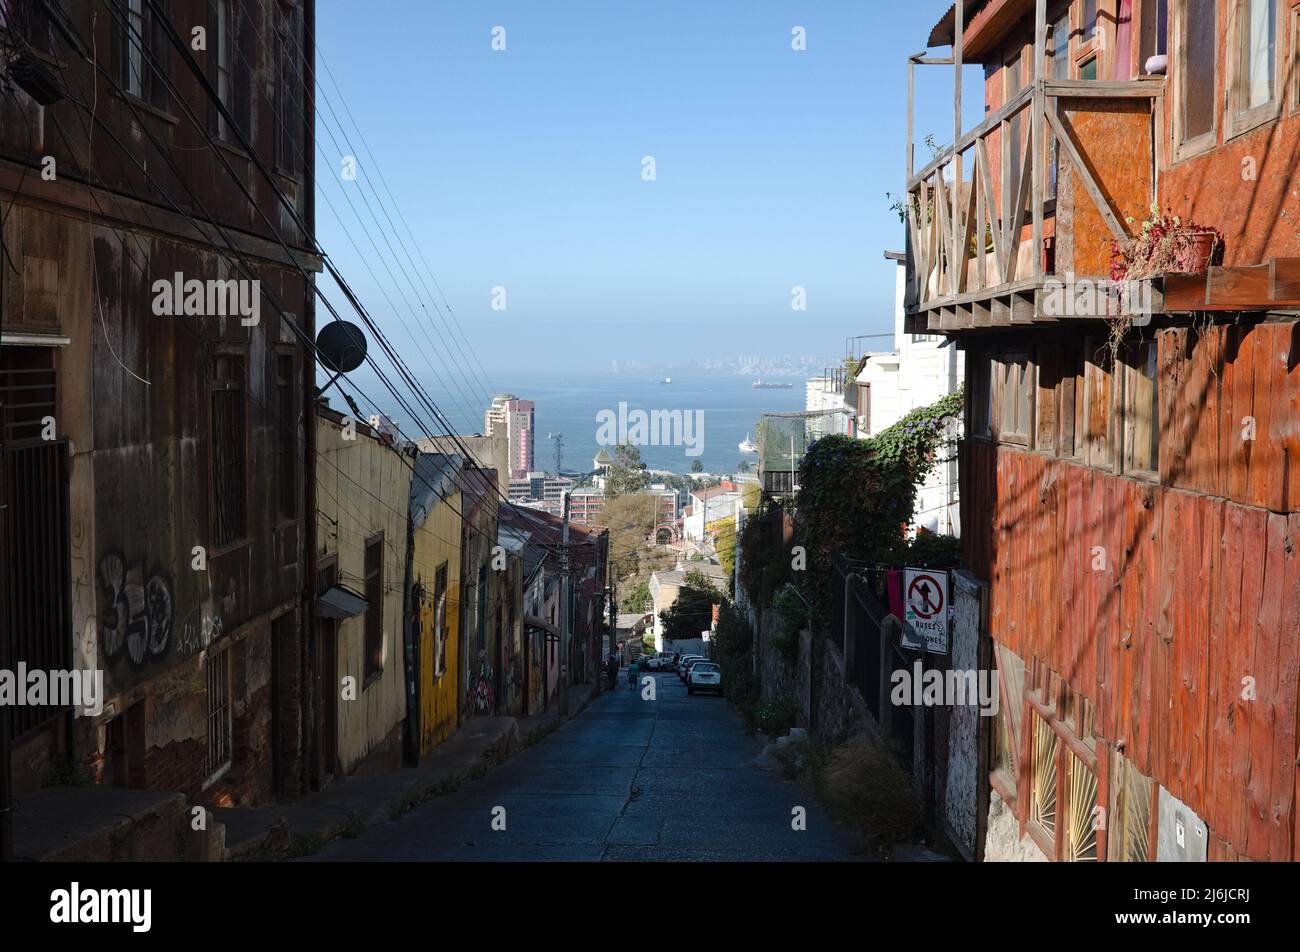 Valparaiso, Cile - Febbraio, 2020: Strada stretta nella parte vecchia della città che da collina giù per l'oceano. Vecchie case di legno sulla collina in zona non turistica Foto Stock